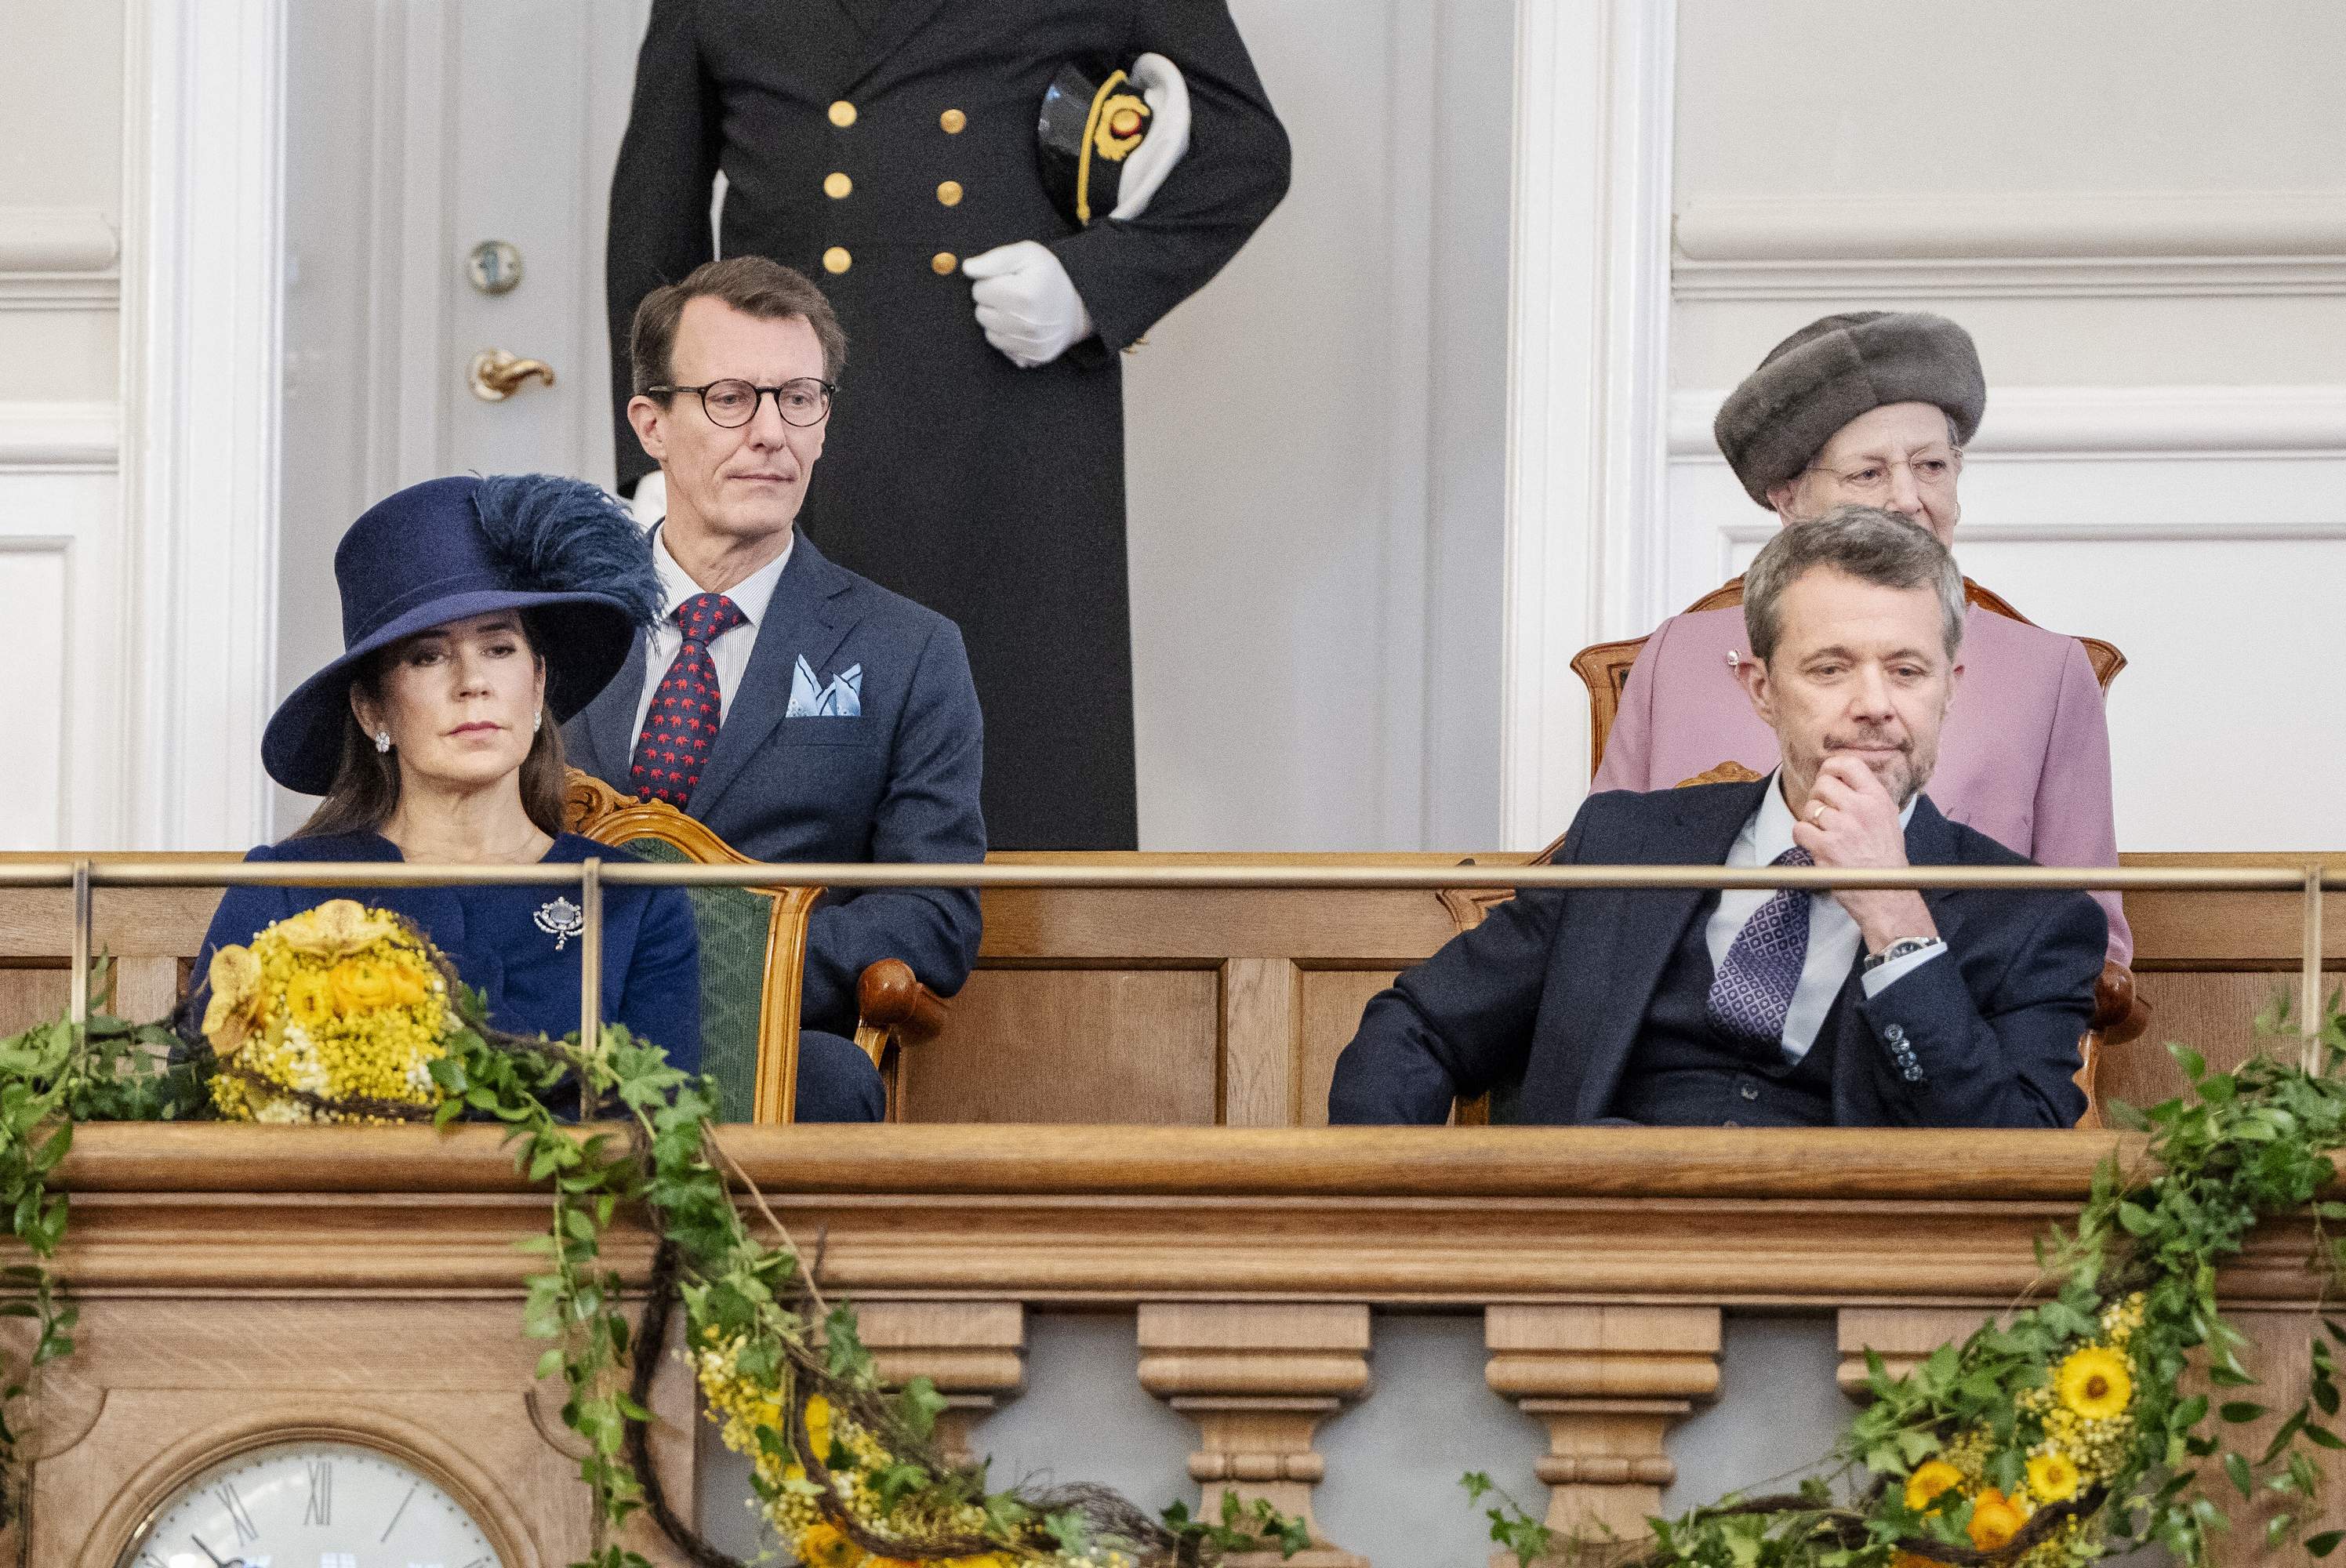 La parella d'un guapíssim royal danès devastada, està vivint un infern